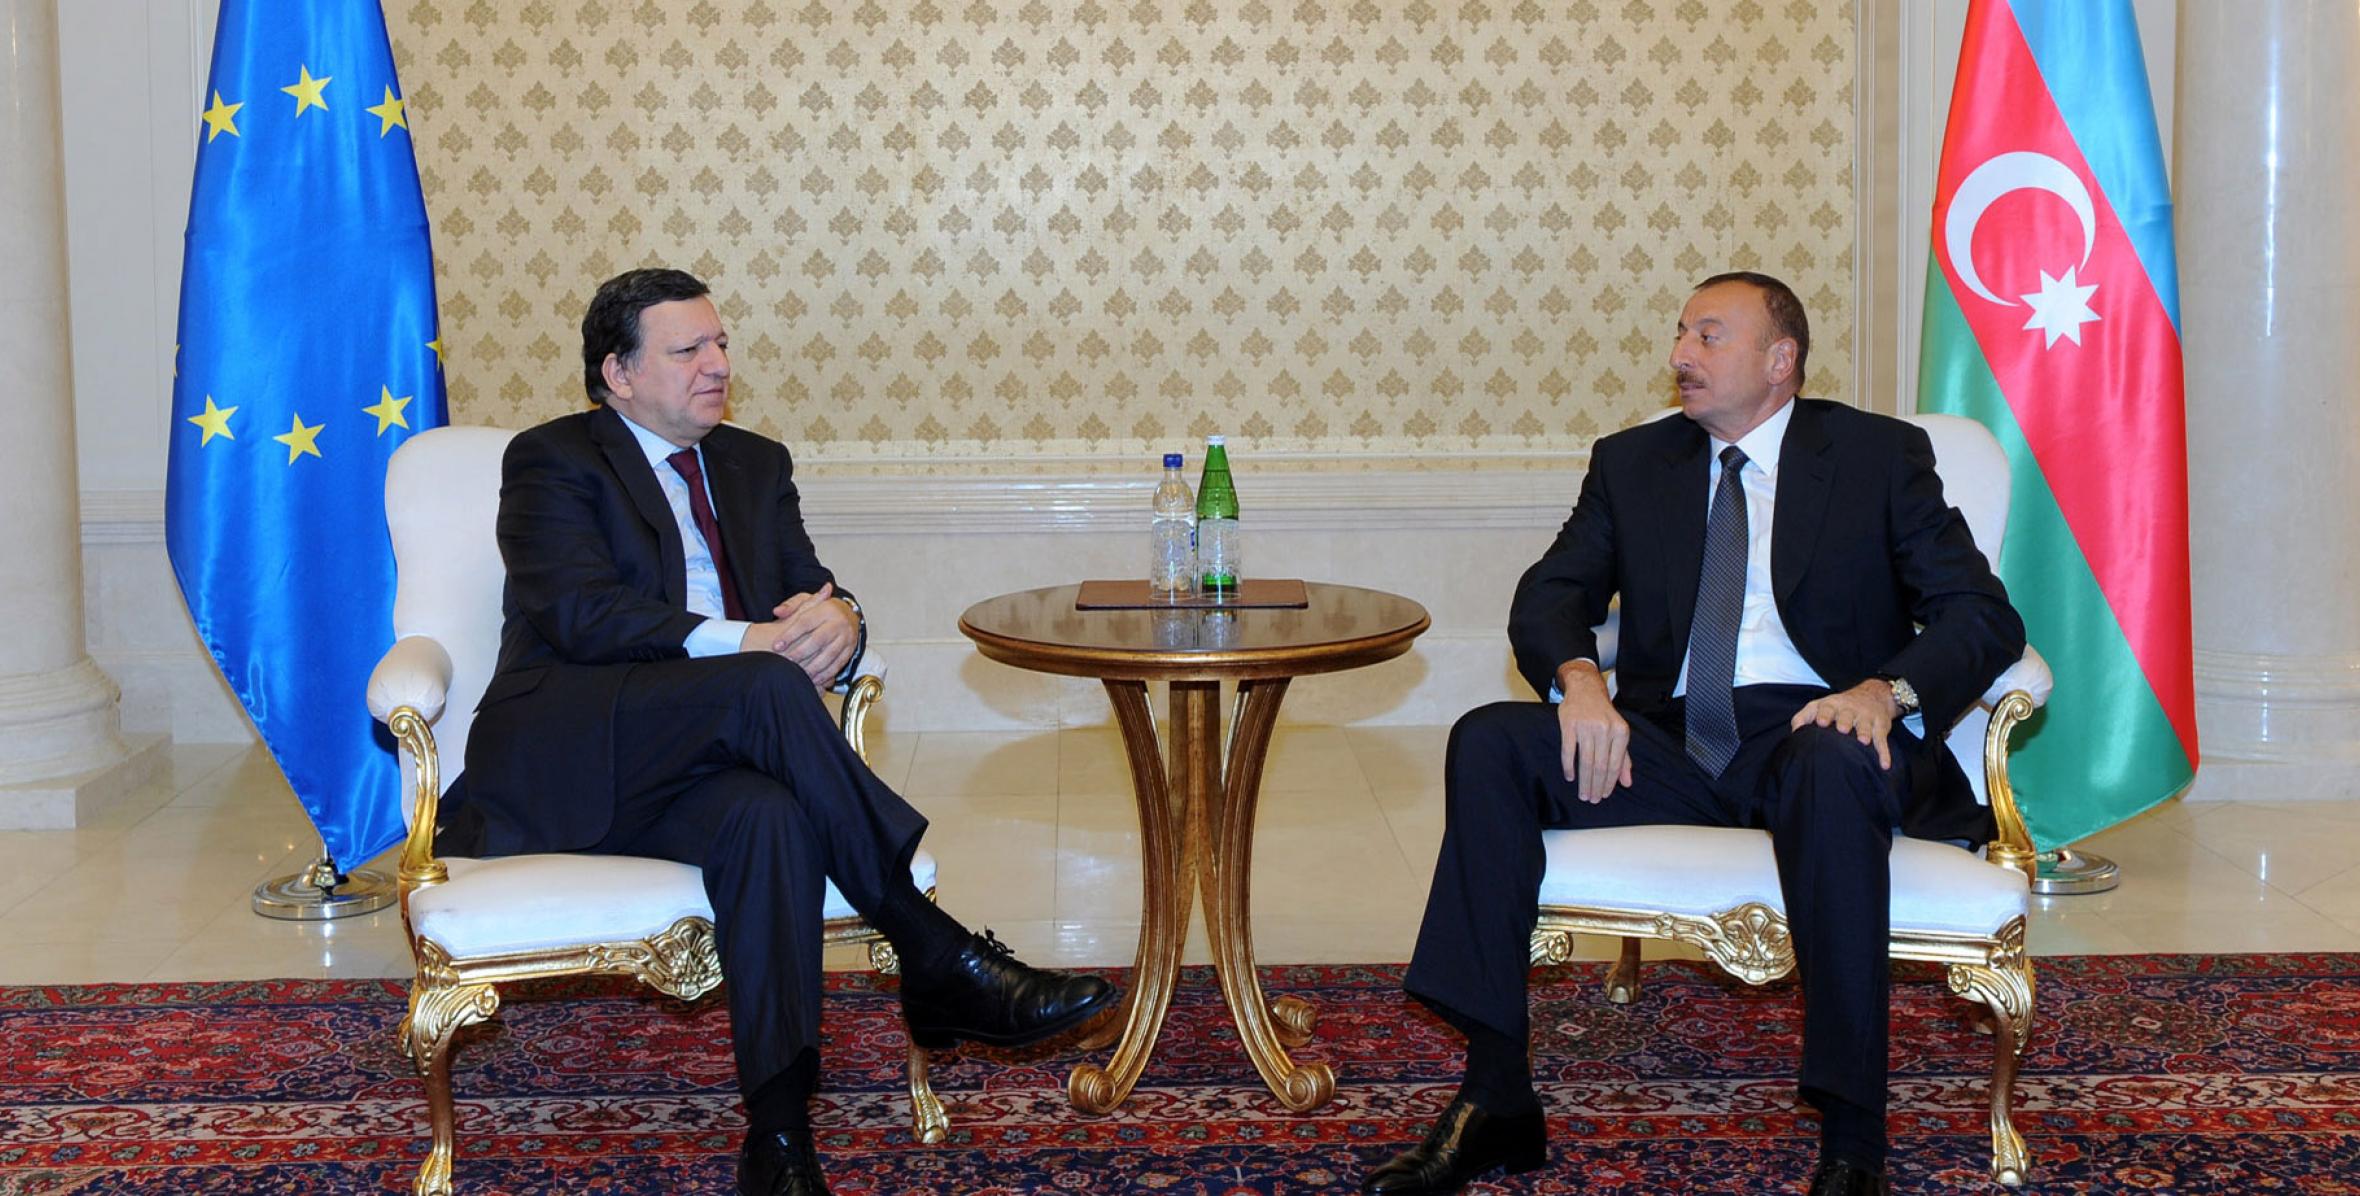 Состоялась встреча Ильхама Алиева и председателя Еврокомиссии Жозе Мануэля Баррозу один на один